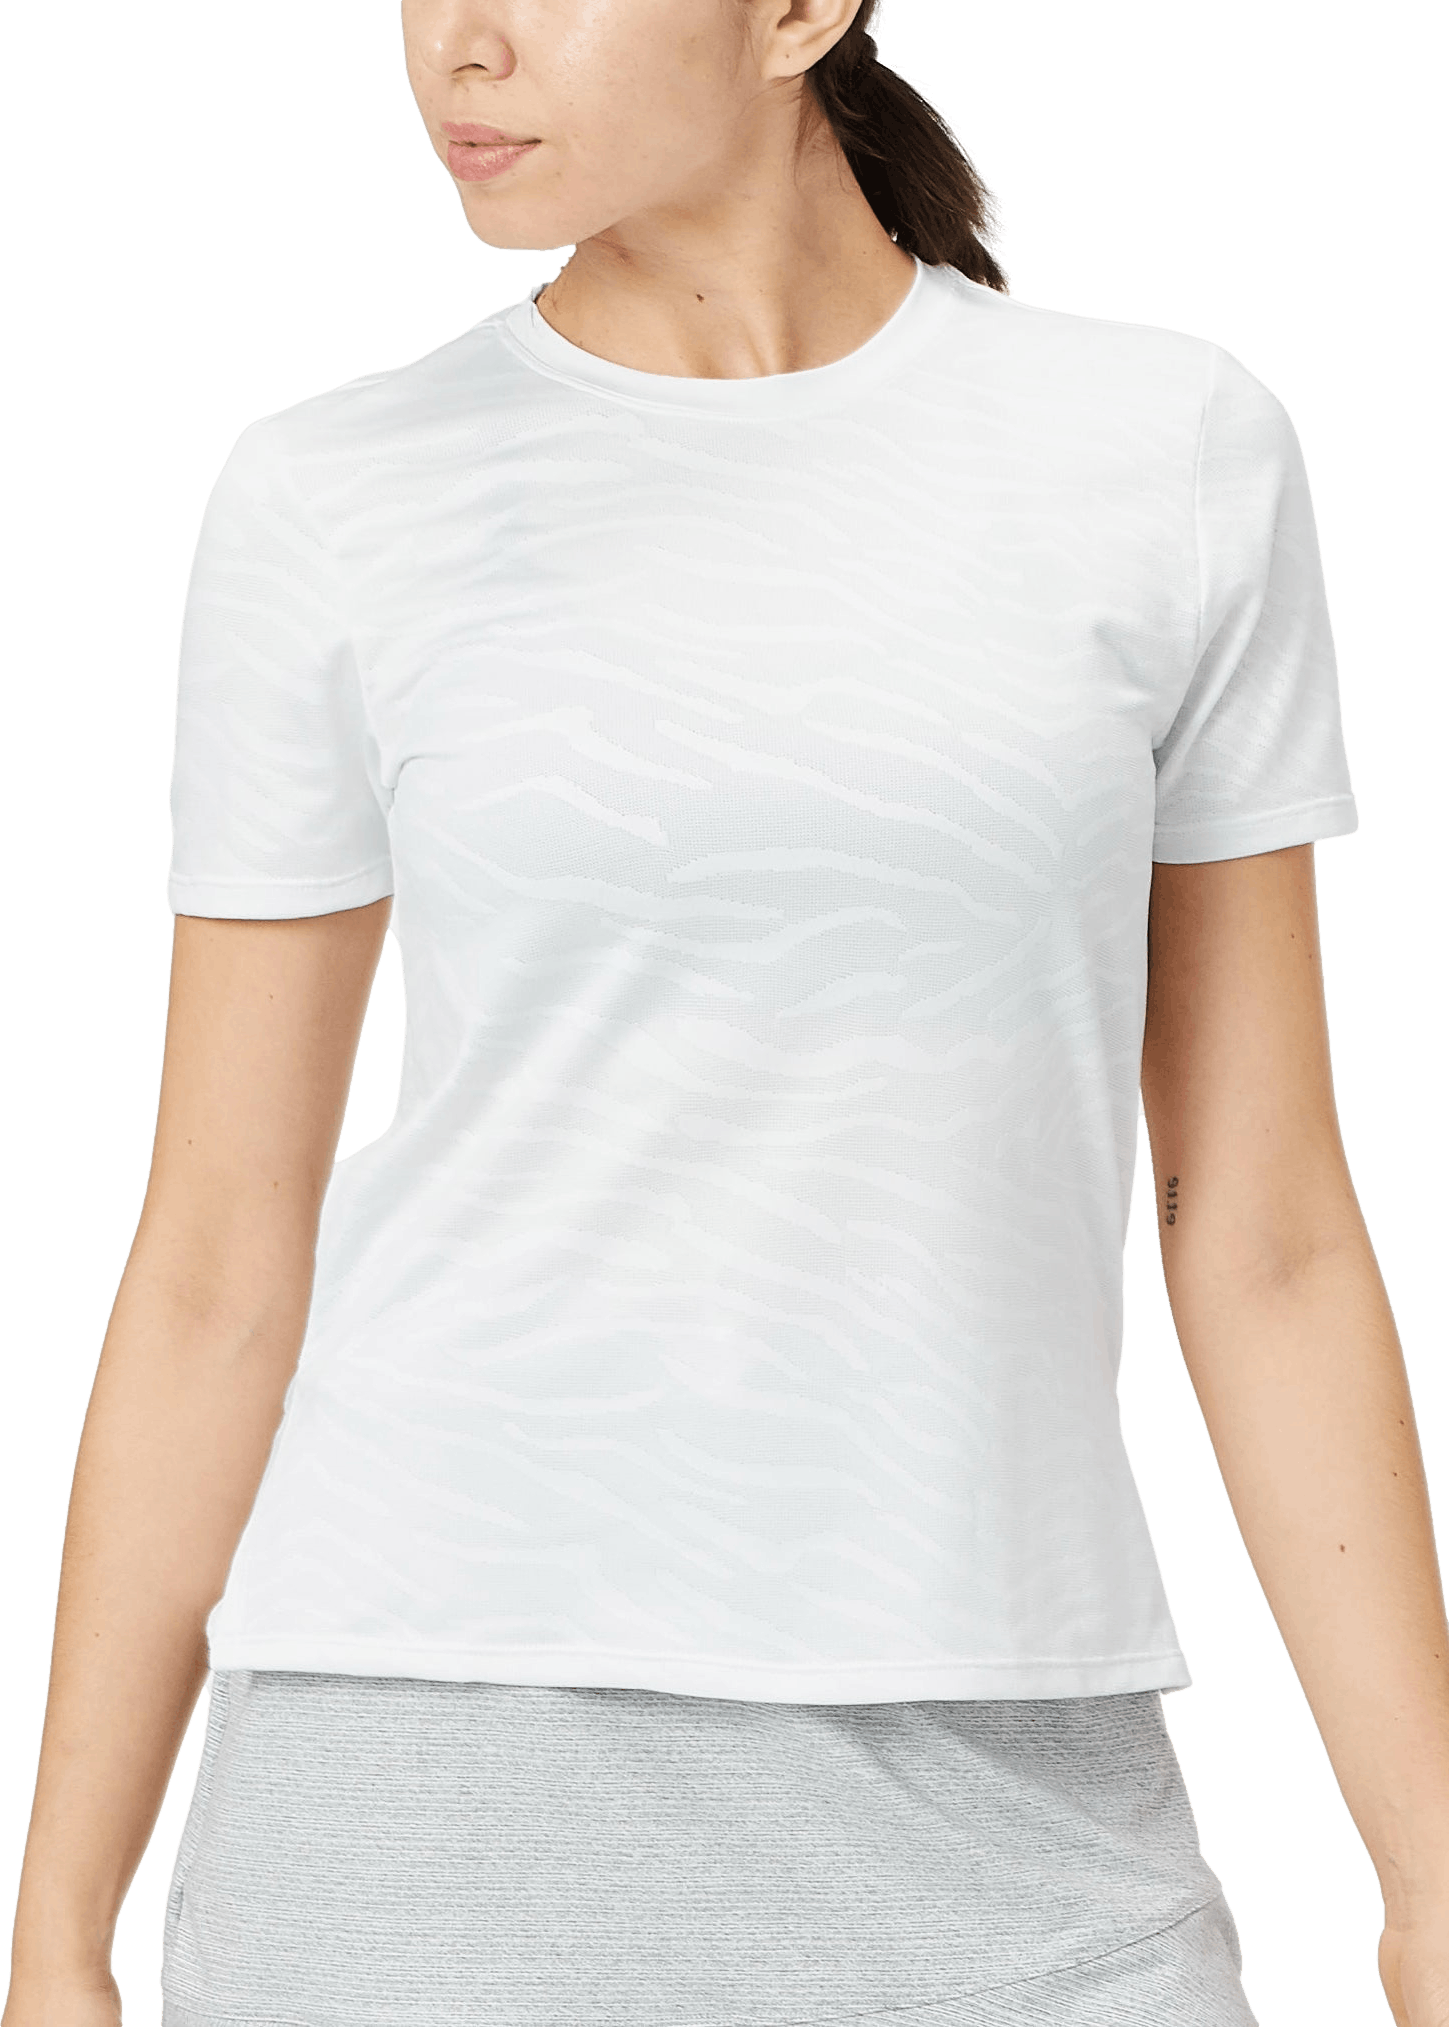 Tail Women's Evert Tennis Shirt